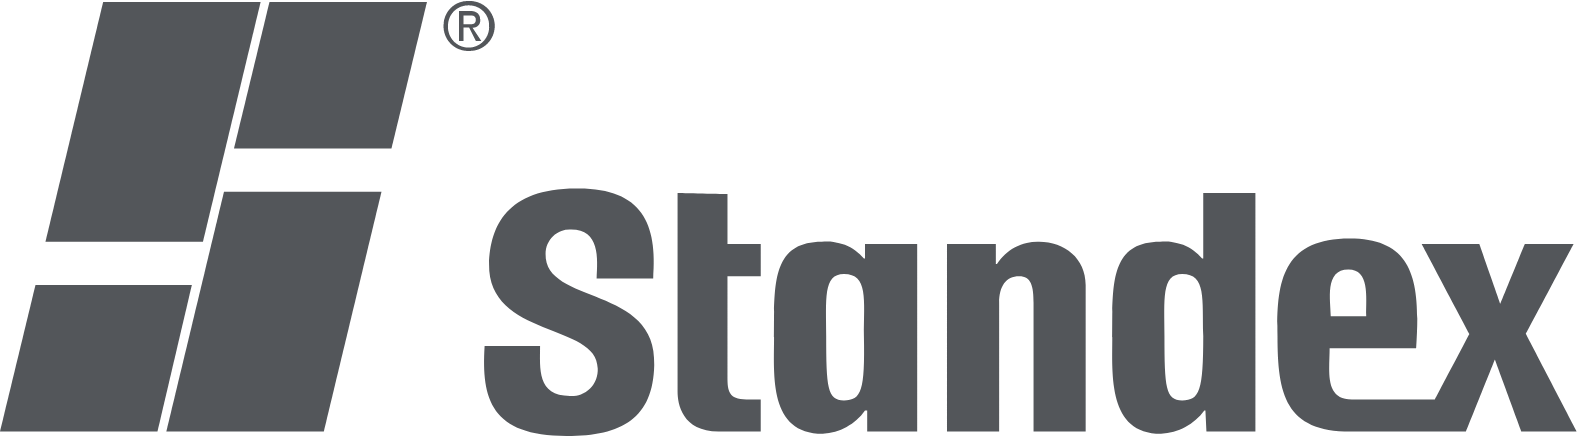 Standex logo large (transparent PNG)